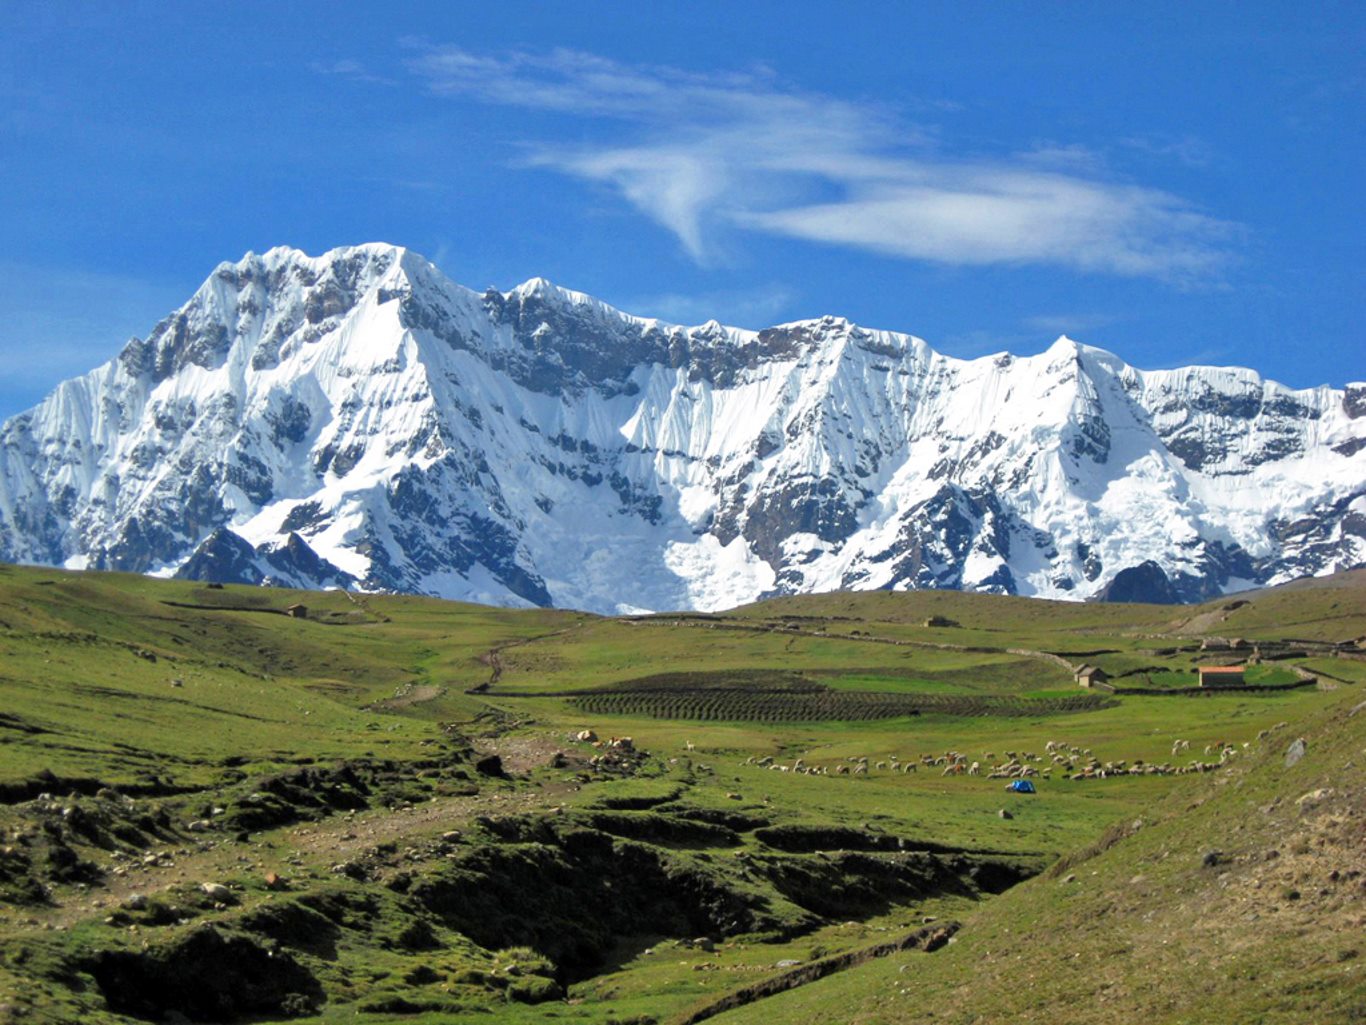 Highest mountains in Peru: Ausangate